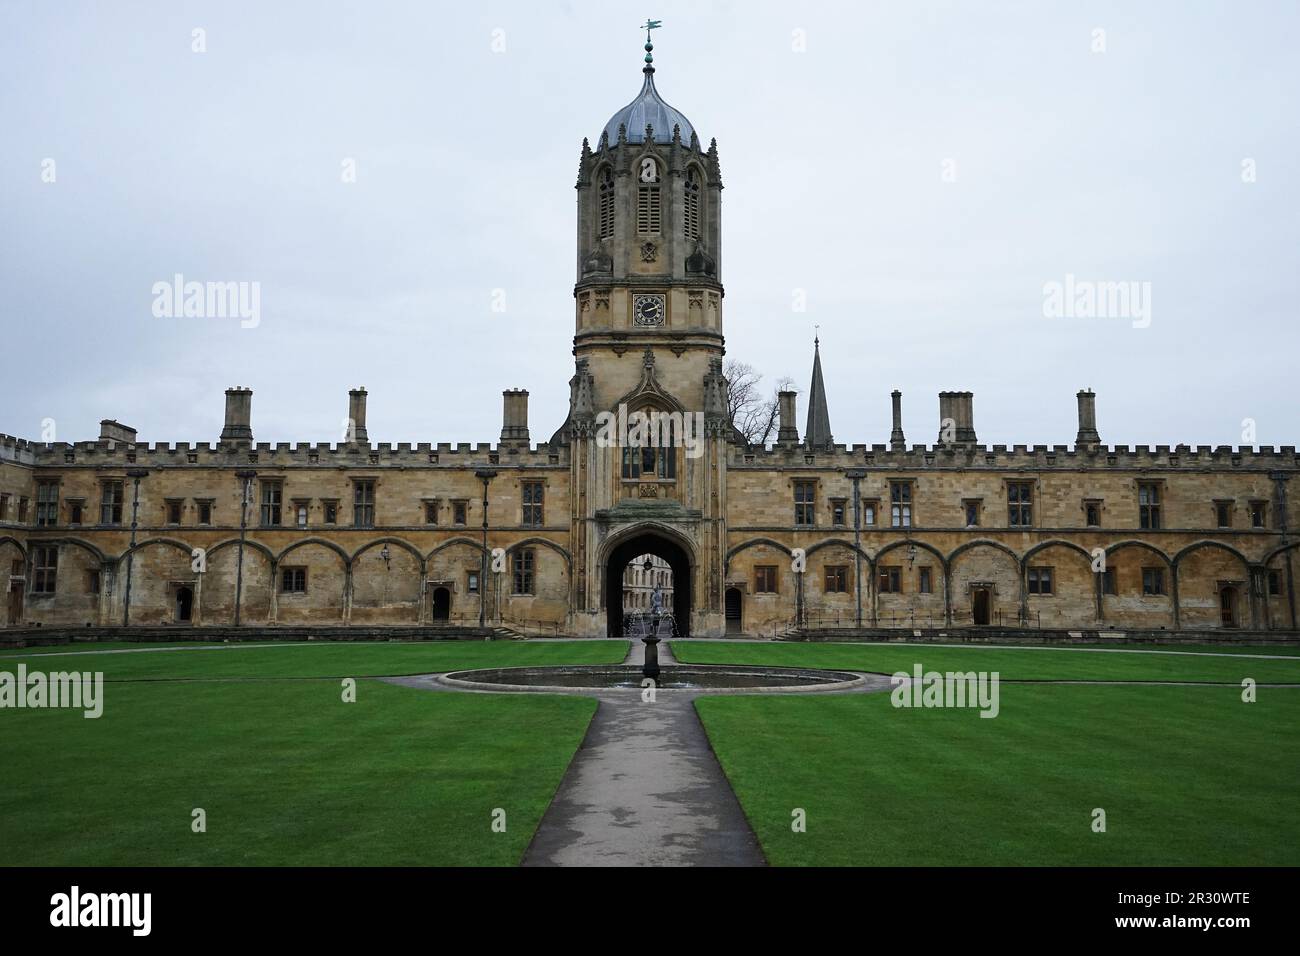 Architecture extérieure européenne et conception de bâtiments de la tour Tom de Christ Church - Université d'Oxford, Angleterre Banque D'Images